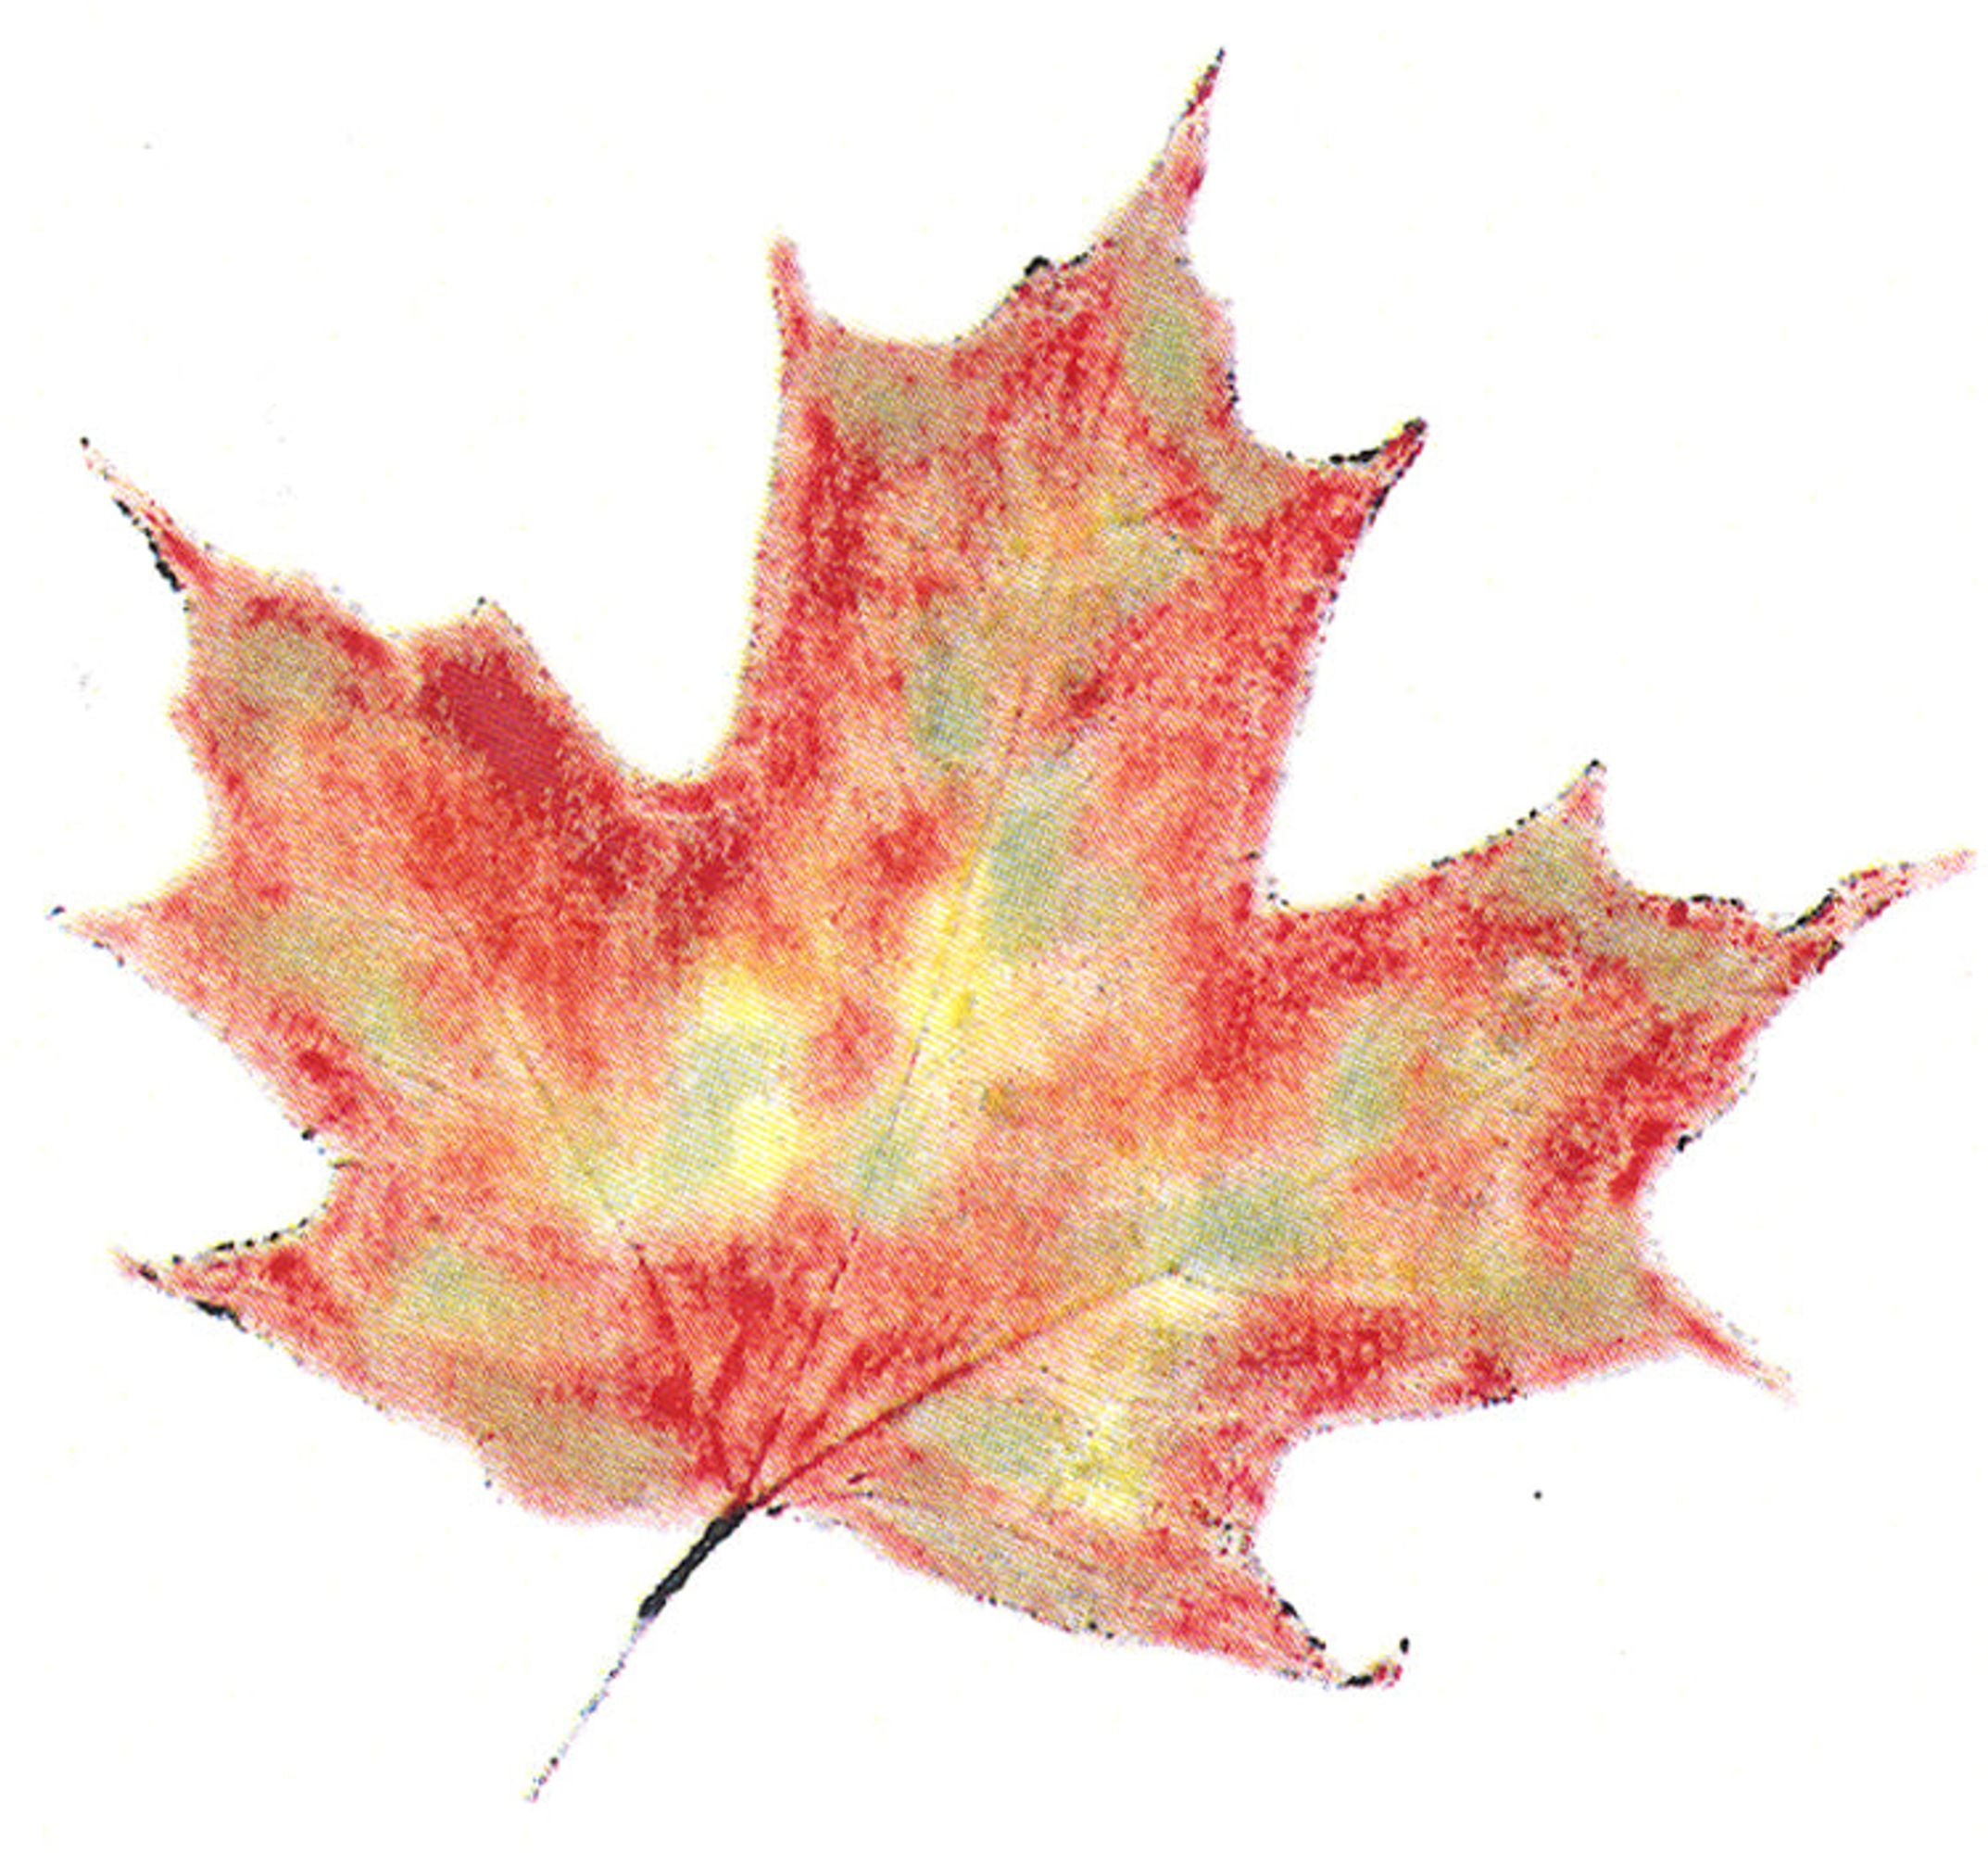 Frog's Whiskers Ink Stamp - Maple Leaf Med.